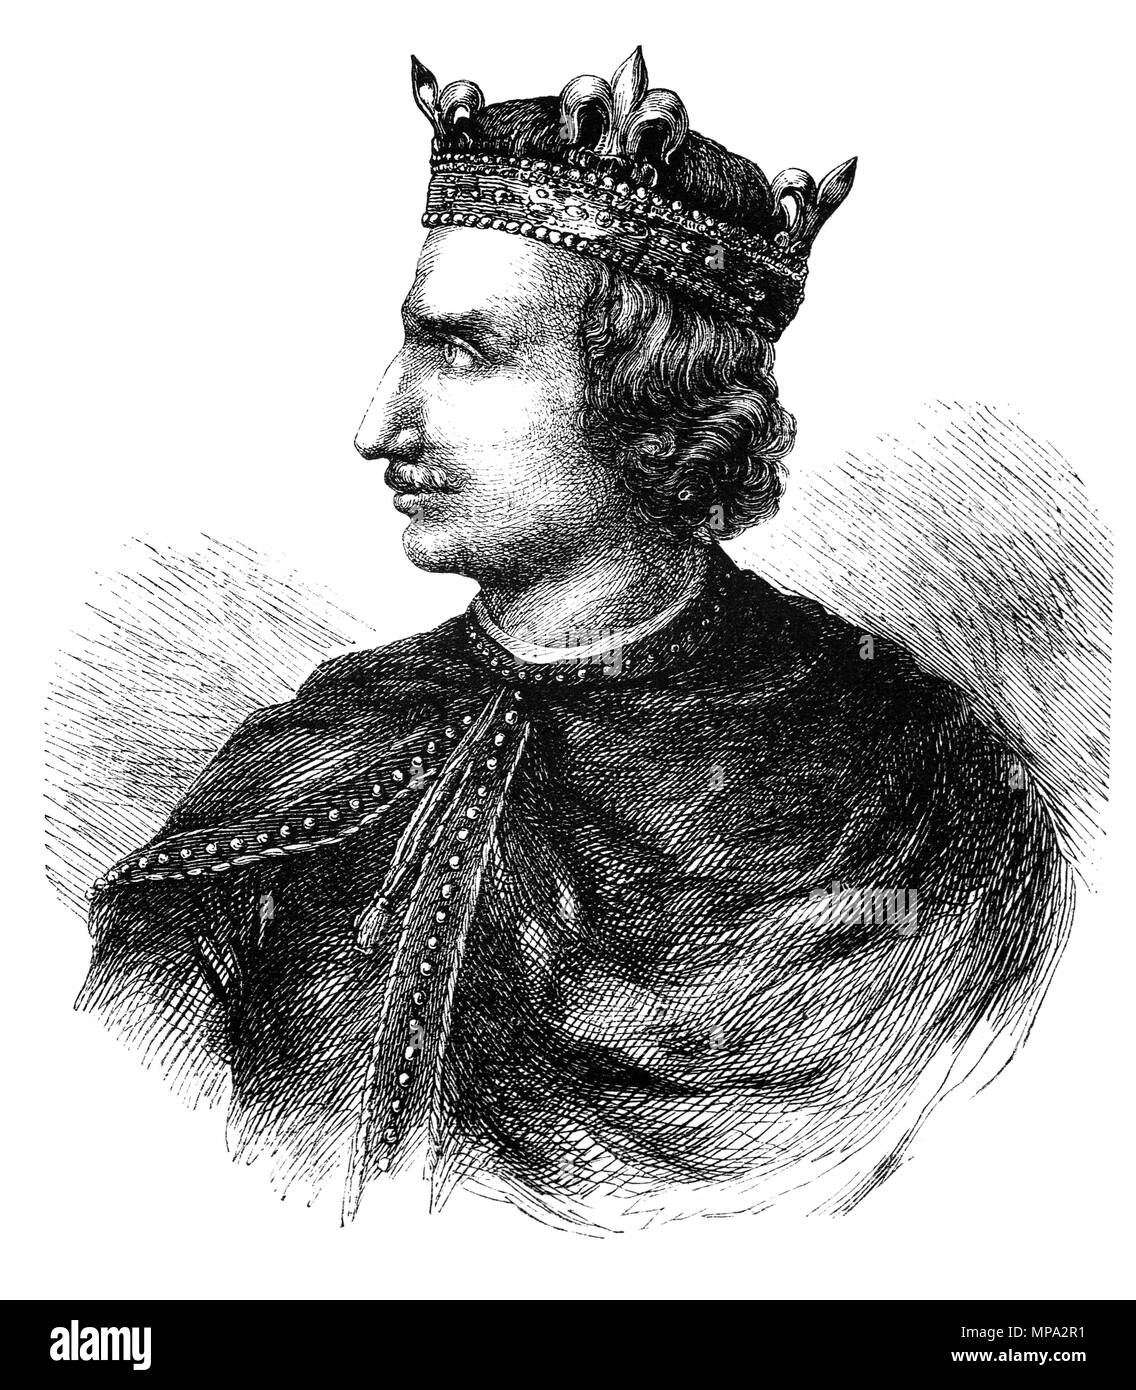 Heinrich I (1068-1135), war König von England von 1100 bis zu seinem Tod. Er war der vierte Sohn von Wilhelm dem Eroberer und auf William's Tod 1087, Henry's ältere Brüder Robert Curthose und William Rufus geerbt, die Normandie und England, aber Henry war landlosen Links. Henry nach und nach seine Machtbasis in der Cotentin umgebaut und verbündete sich mit William gegen Robert. Henry war anwesend, als William in einem Jagdunfall im Jahre 1100 starb, und er ergriff den englischen Thron und verspricht bei seiner Krönung viele der weniger populären William's Politik zu korrigieren. Stockfoto